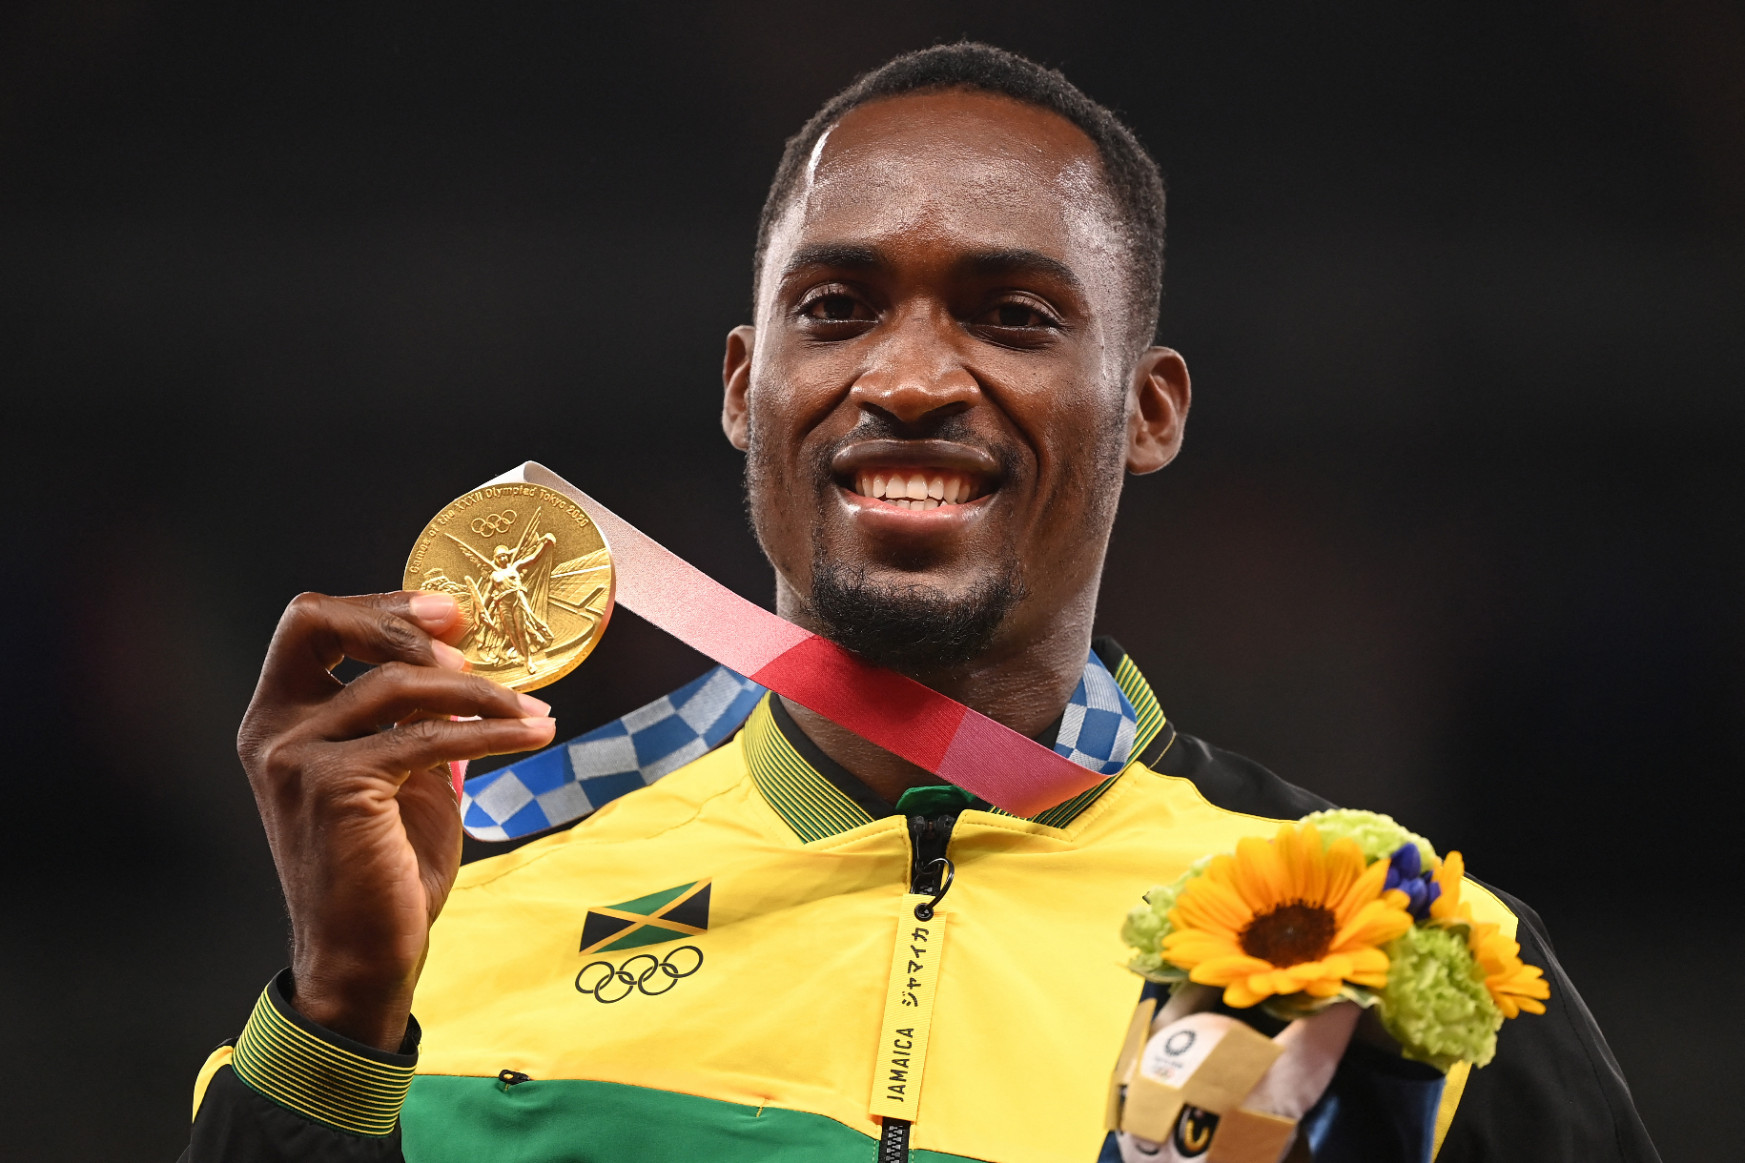 Az olimpiai bajnok atléta és Jamaica örökre hálás az önkéntesnek, aki kifizette a taxiját a döntő előtt